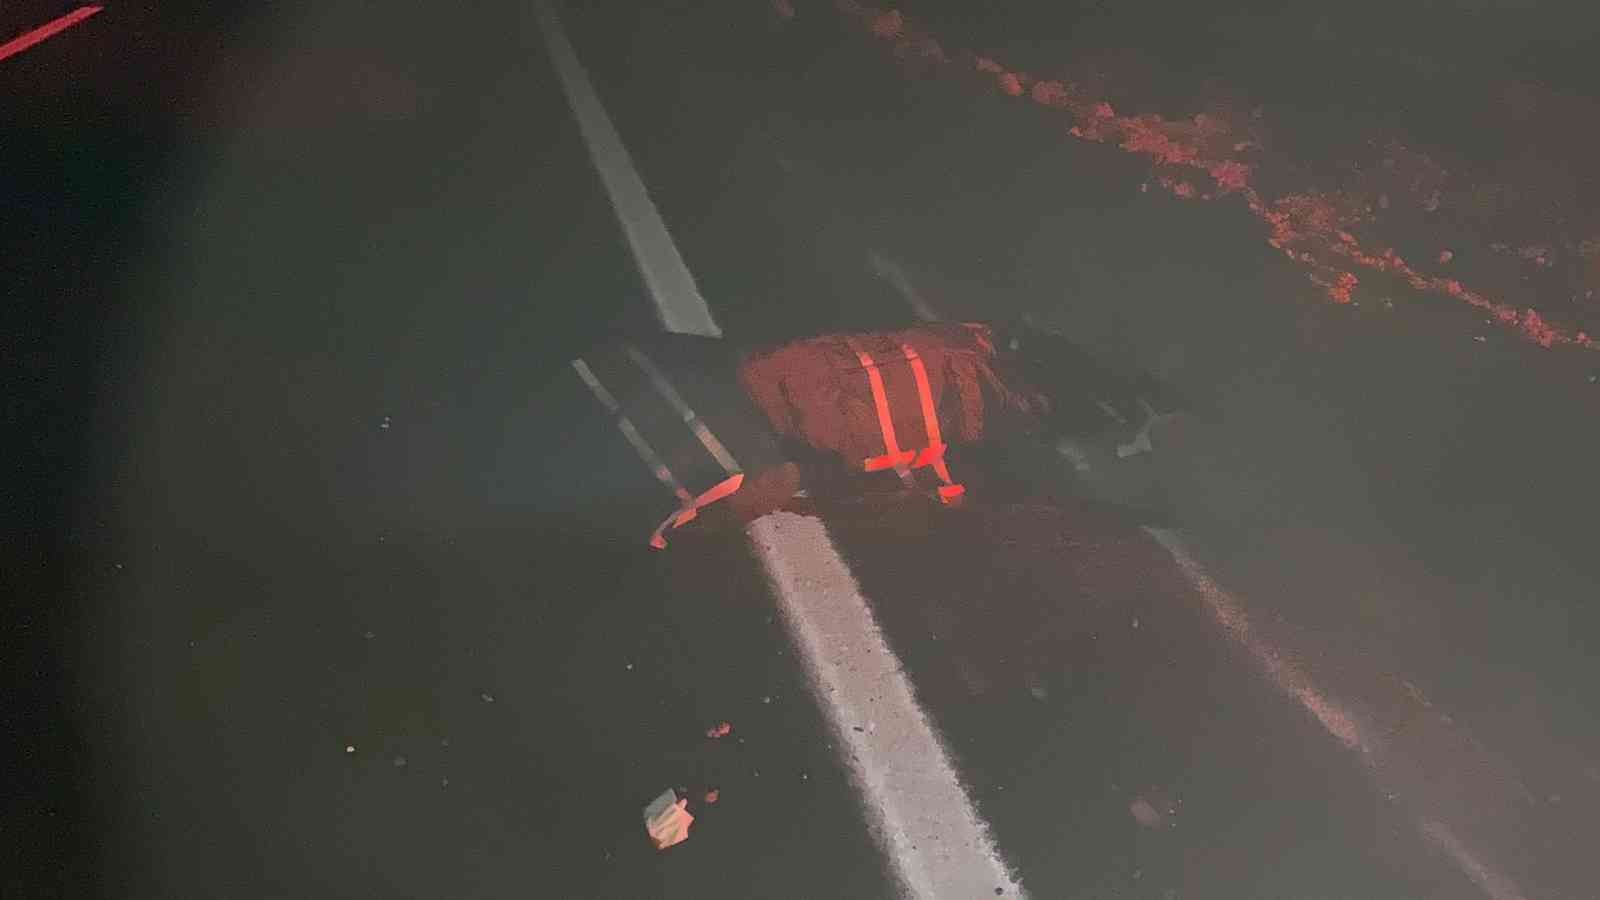 Sürücüsünün kapalı yolu fark etmediği araç metrelerce takla attı: 1 ölü, 3 ağır yaralı #diyarbakir